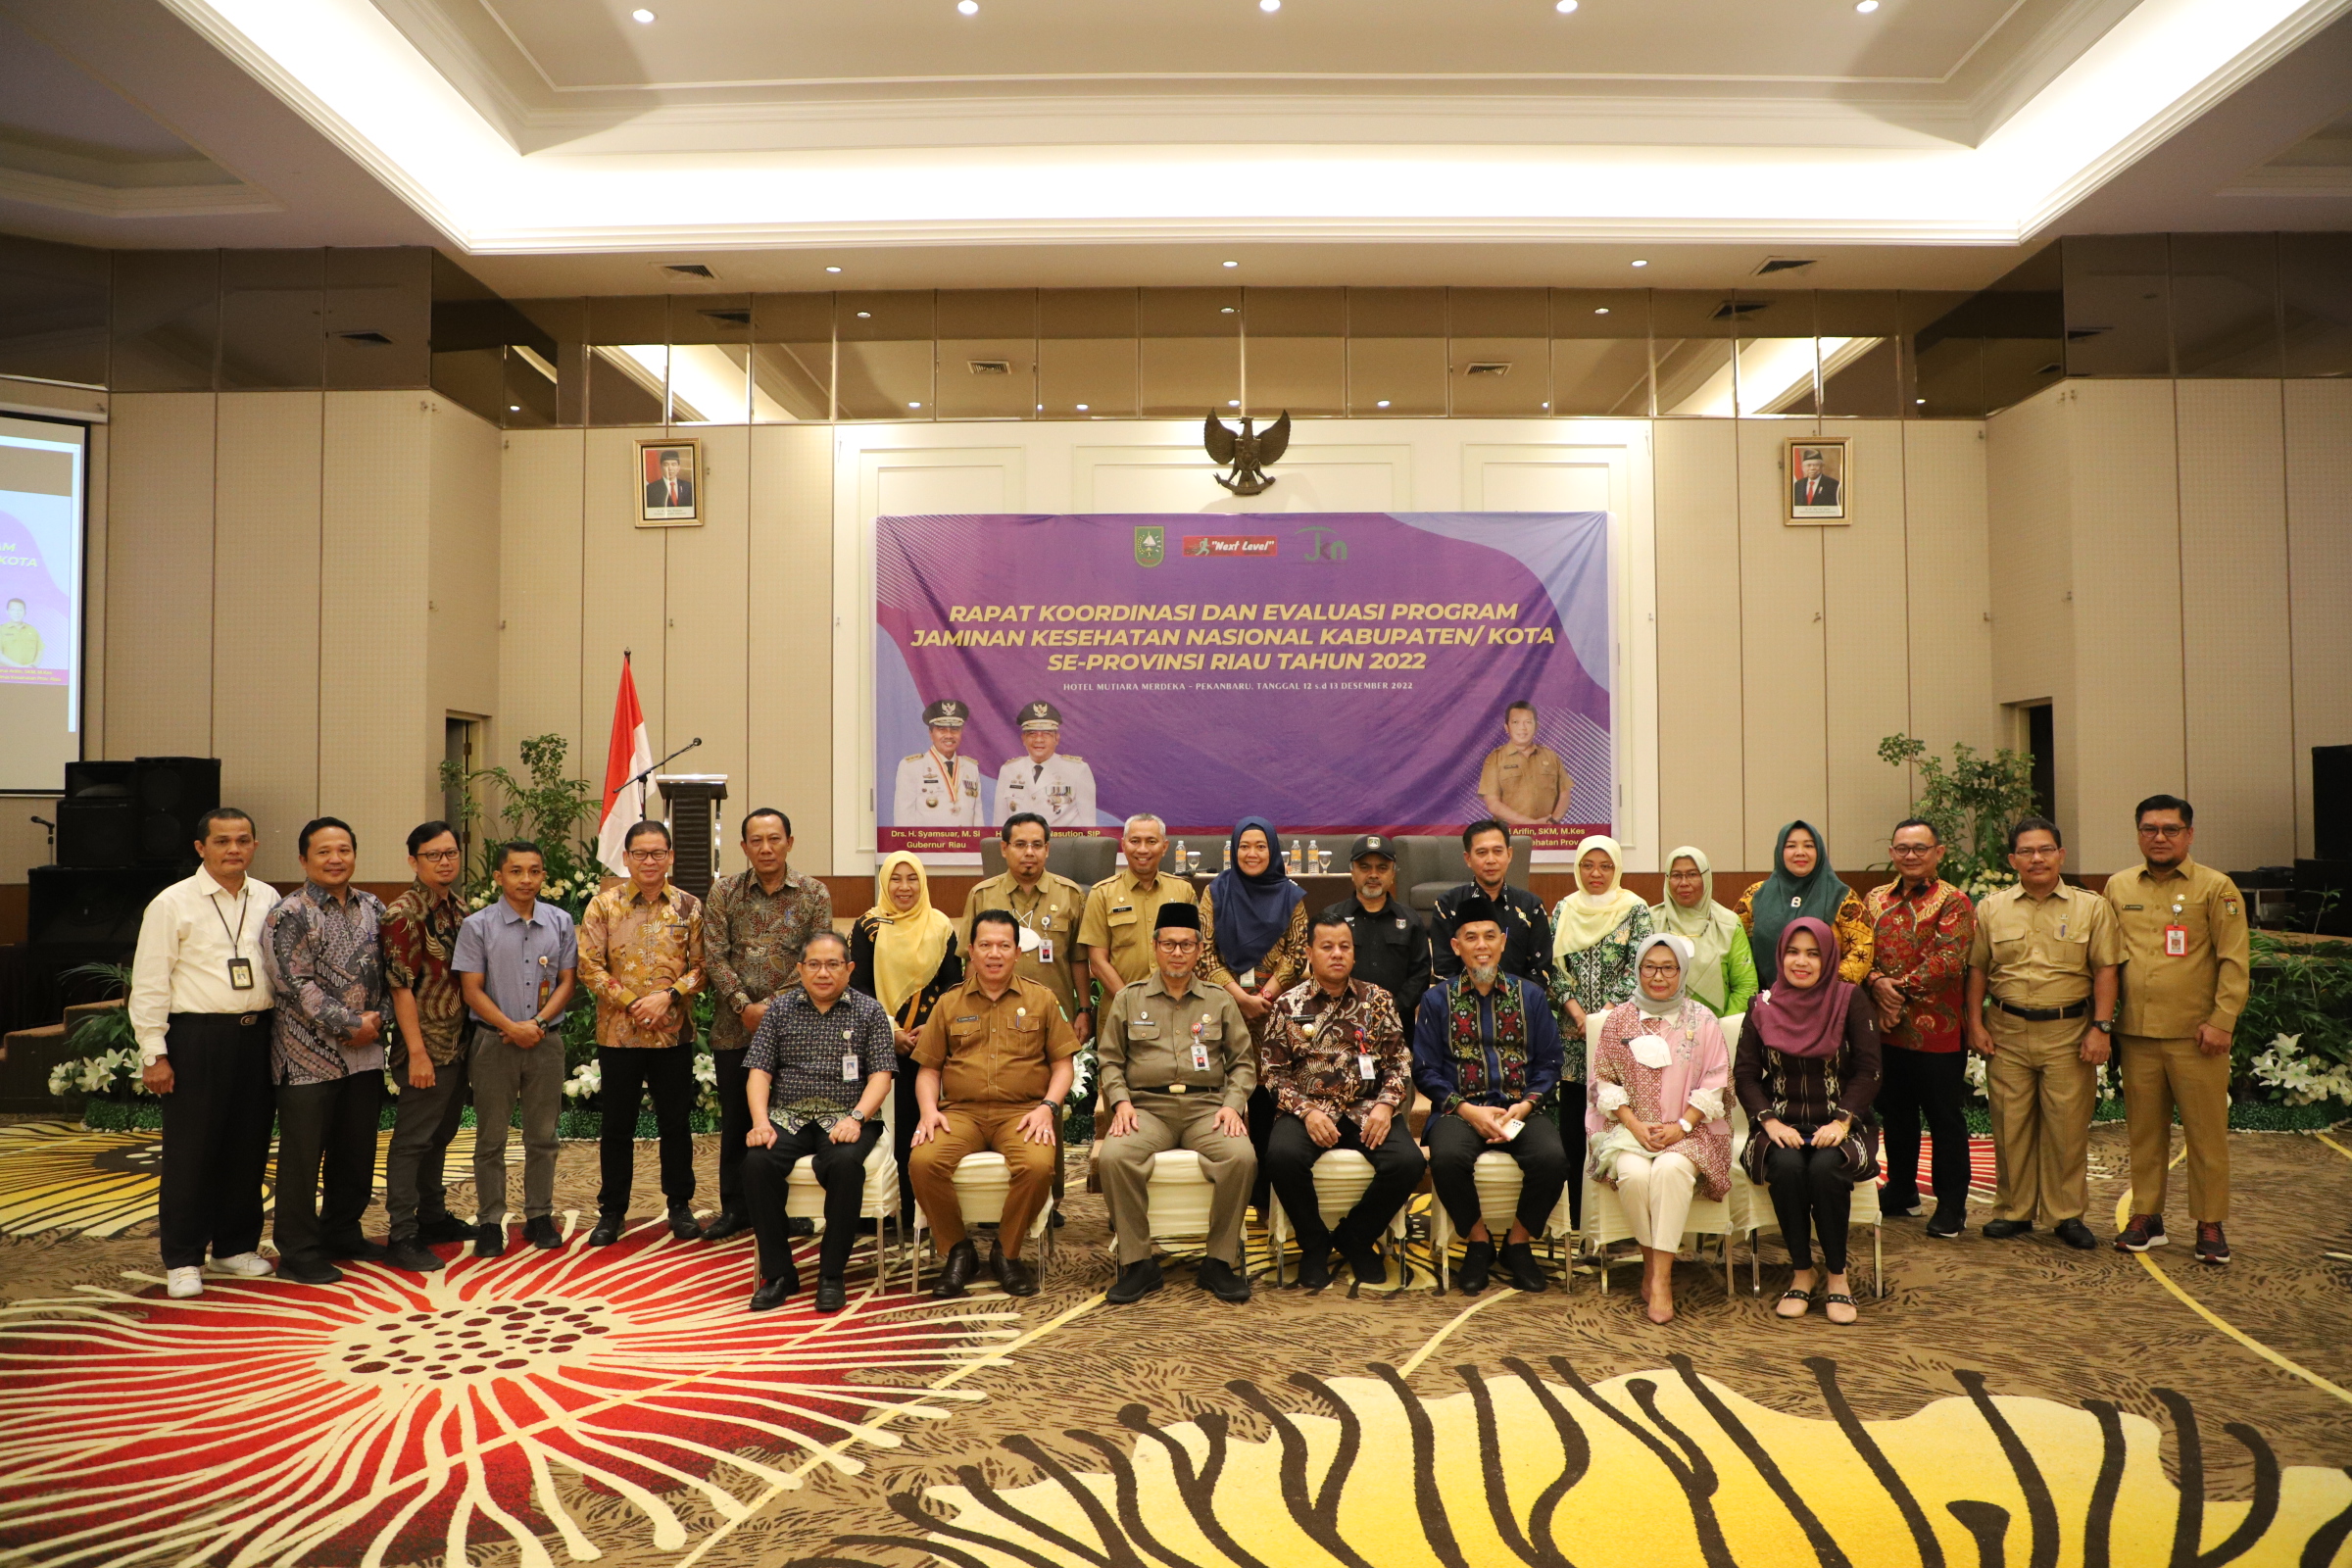 Rapat Koordinasi dan Evaluasi Program Jaminan Kesehatan Nasional Kabupaten/Kota se Provinsi Riau Tahun 2022